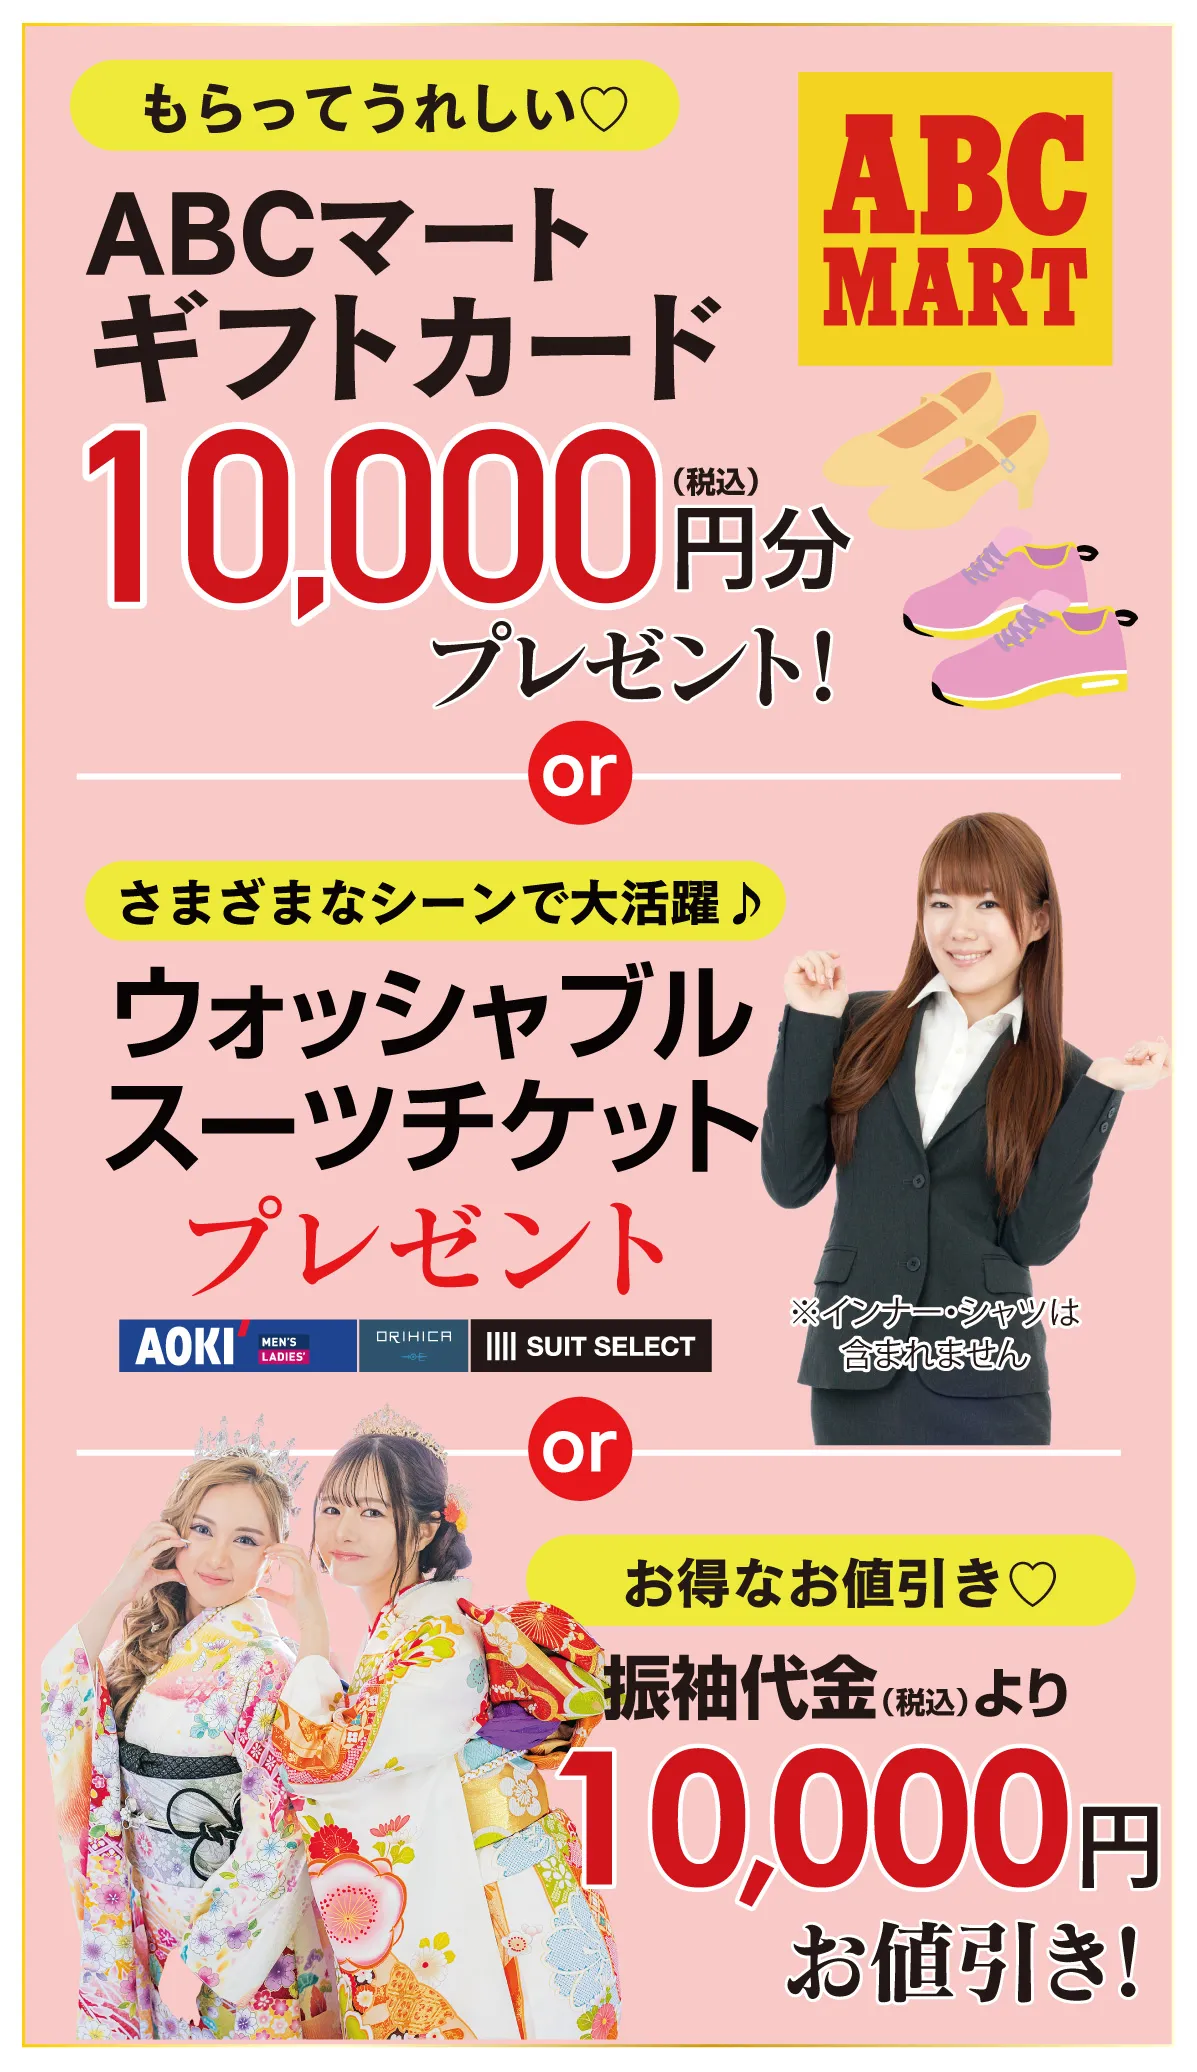 ABCギフト件 or 2万円引き